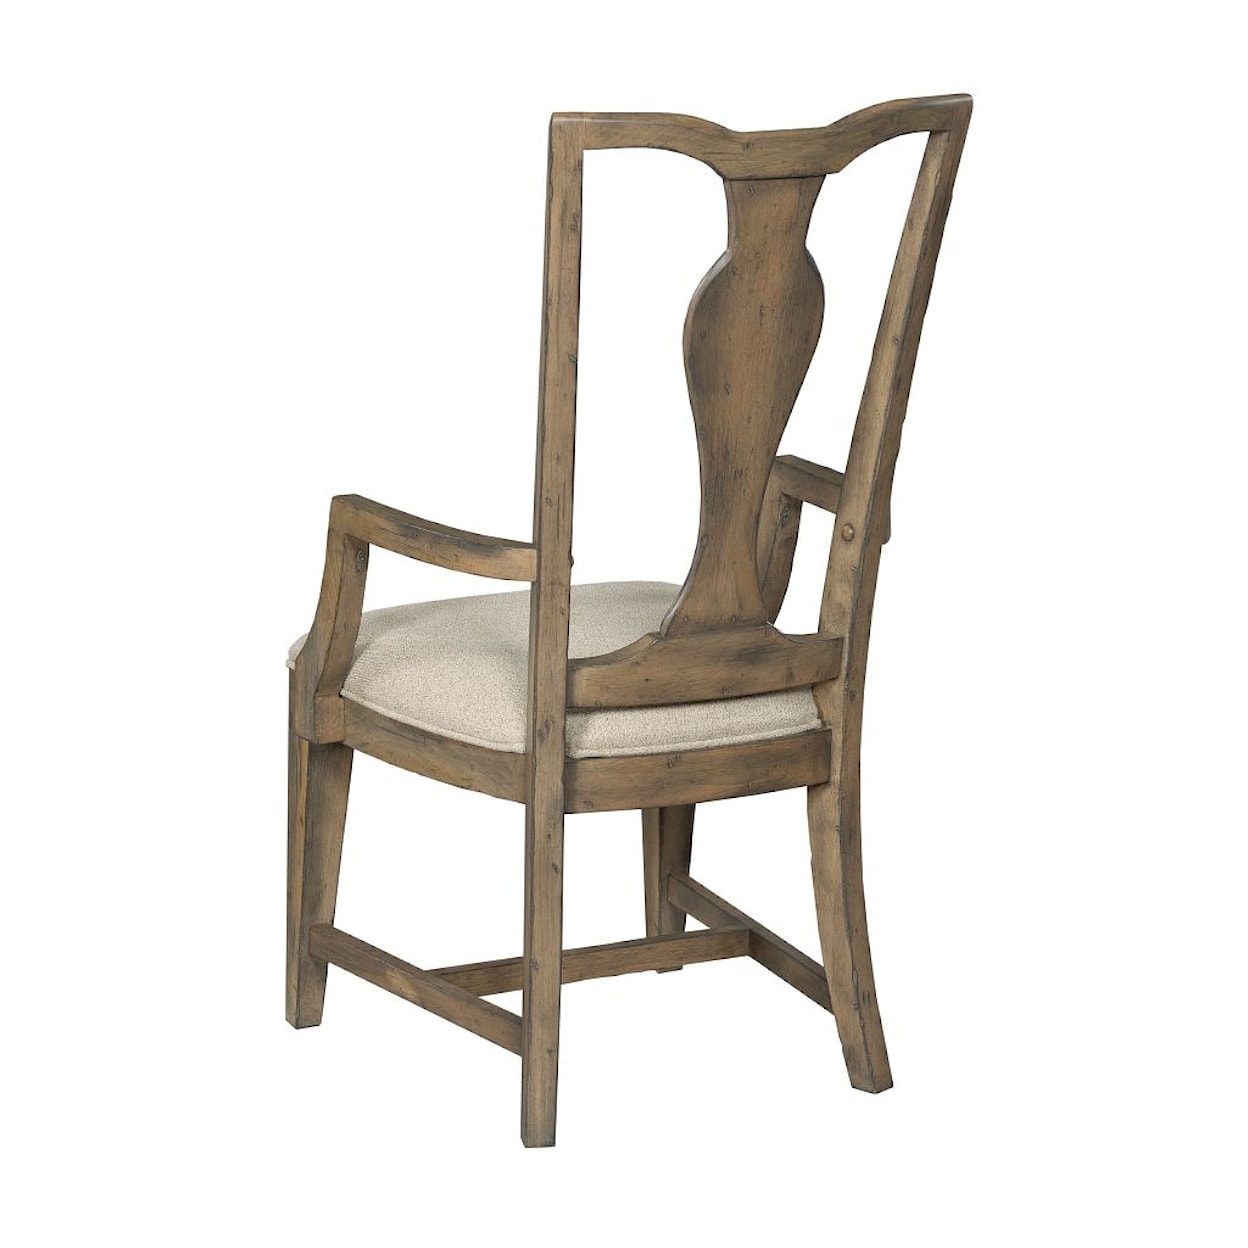 Kincaid Furniture Mill House Copeland Arm Chair